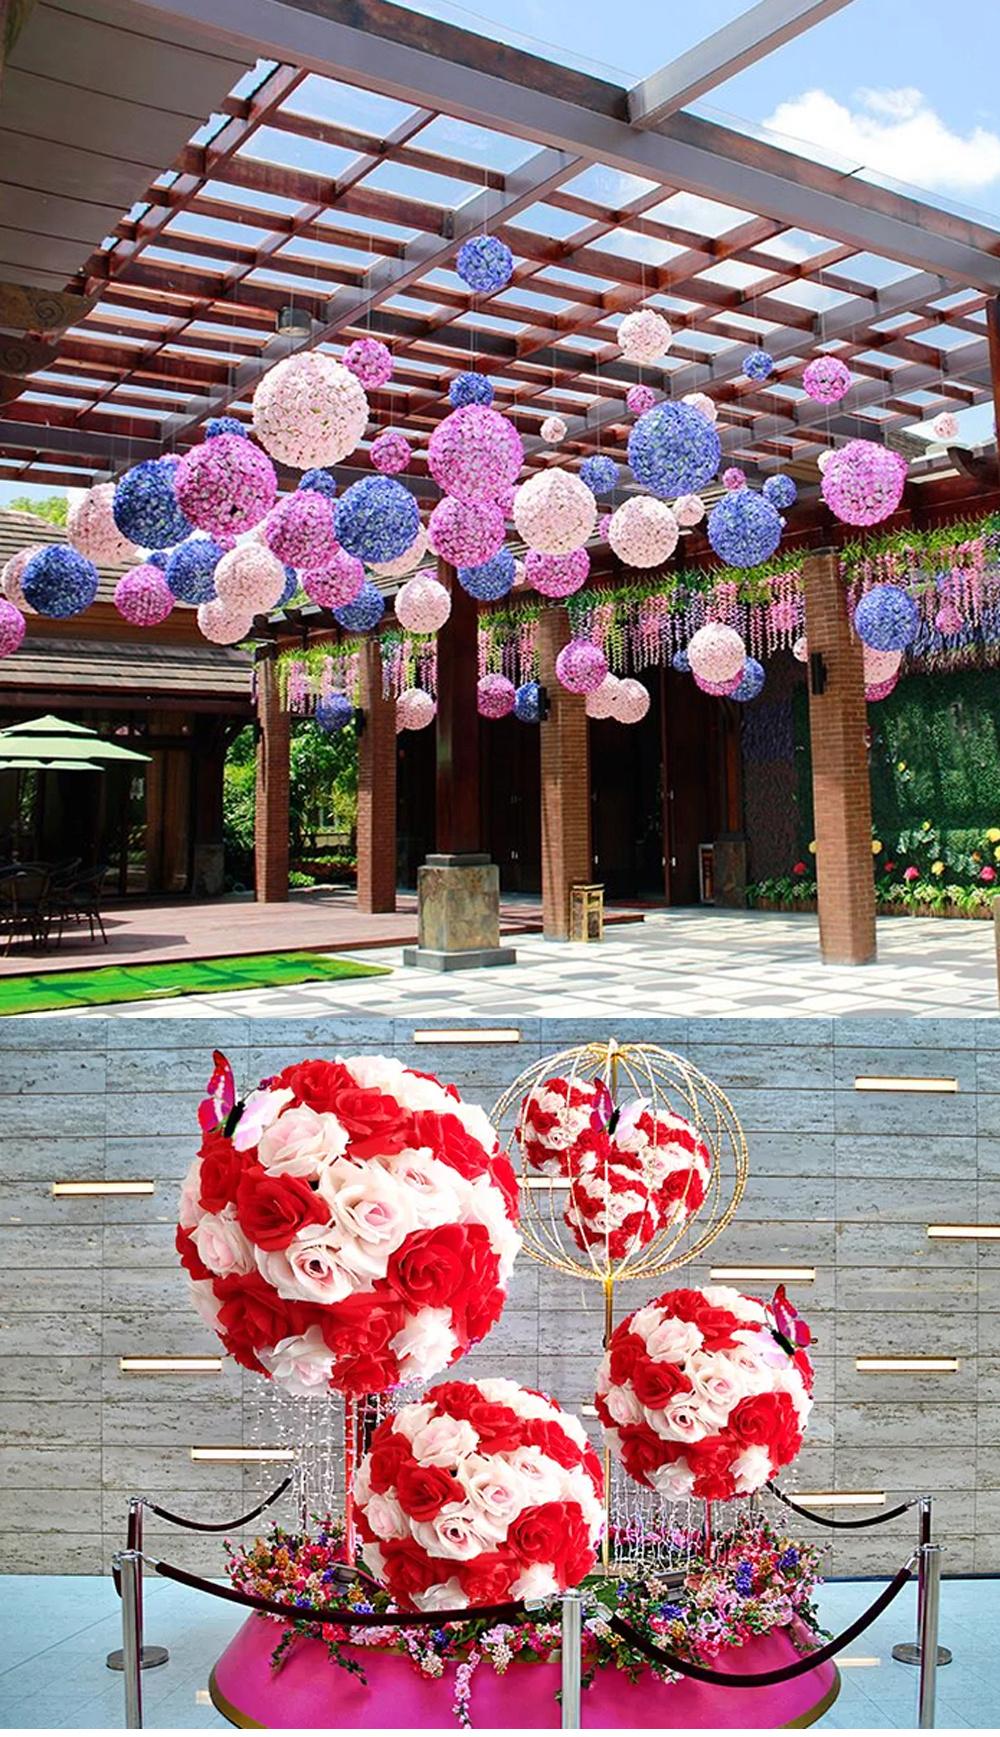 Artificial Decoration Flower-Flower Balls